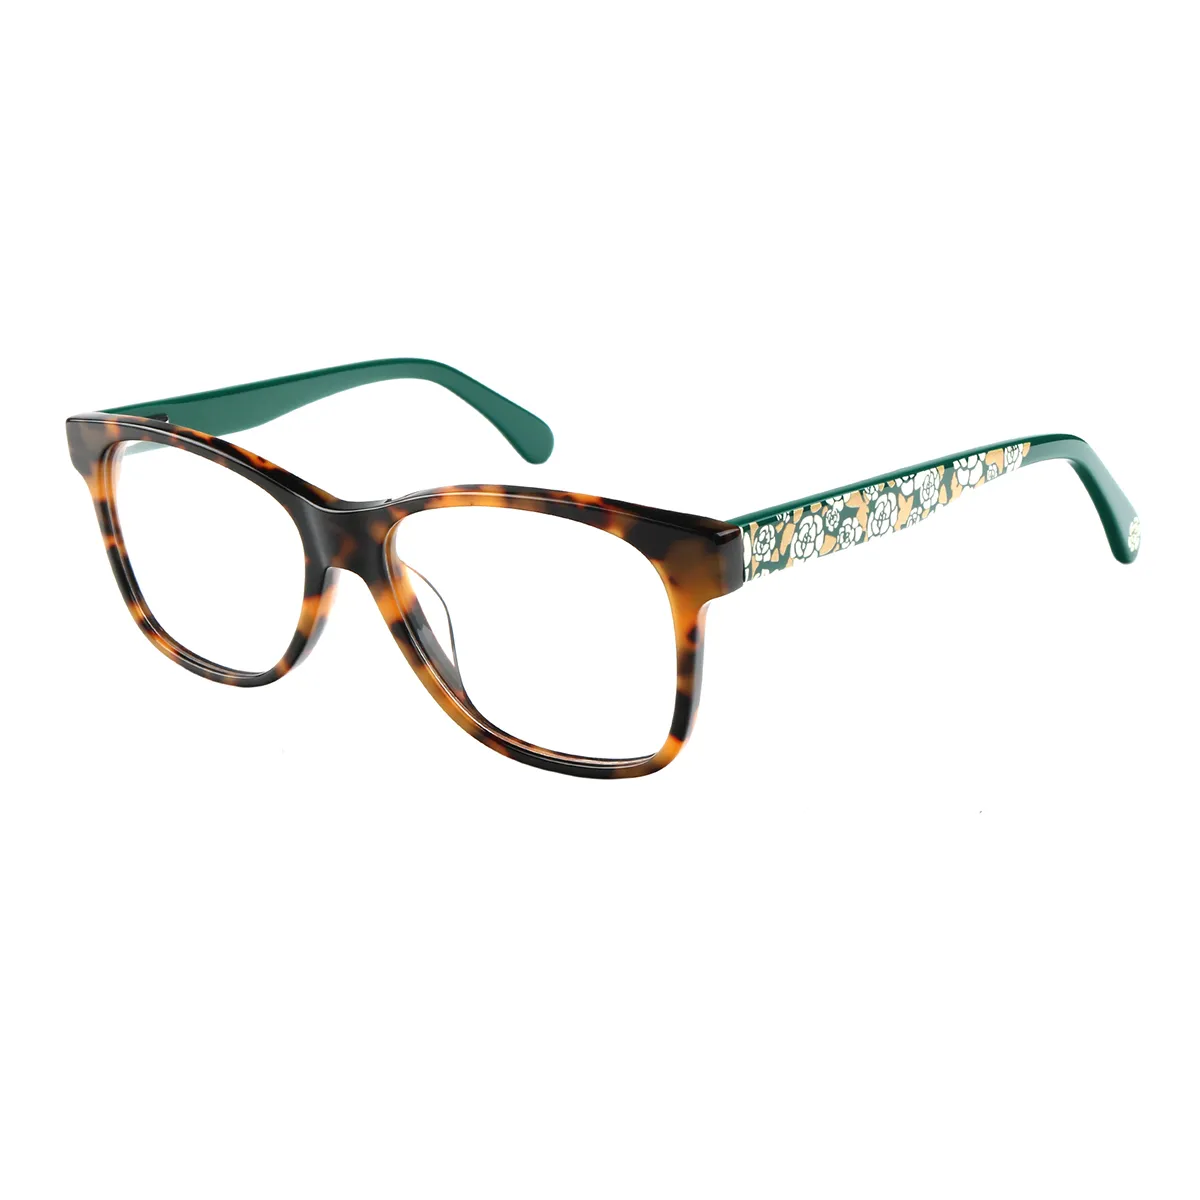 Marlene - Square Tortoiseshell Glasses for Women